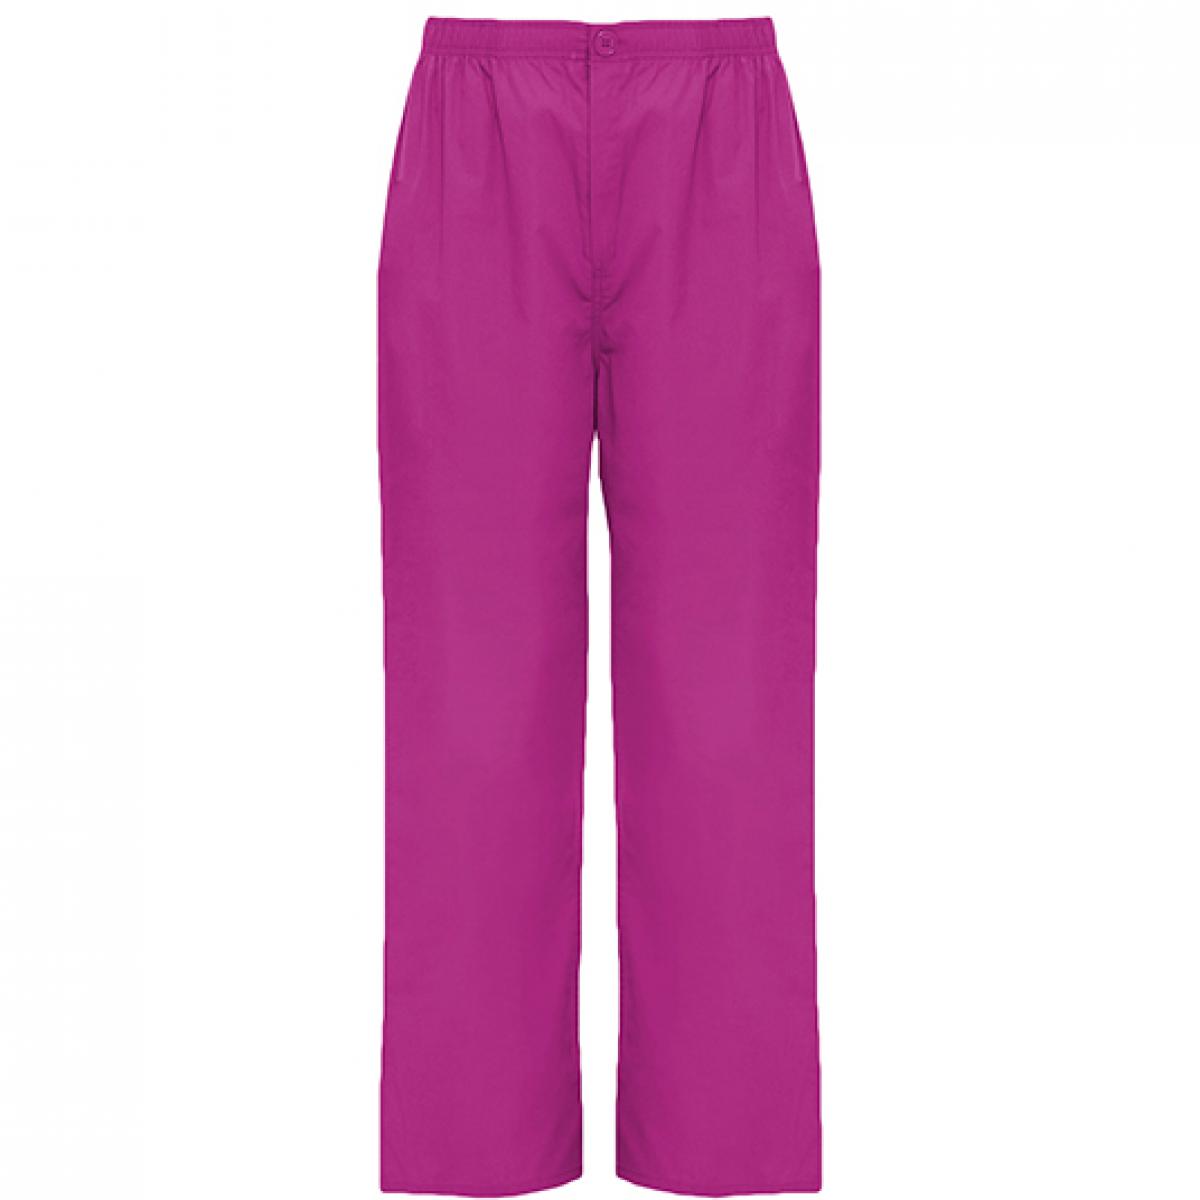 Hersteller: Roly Workwear Herstellernummer: PA9097 Artikelbezeichnung: Vademecum Pull on trousers - Pfegerhose Farbe: Violett 95